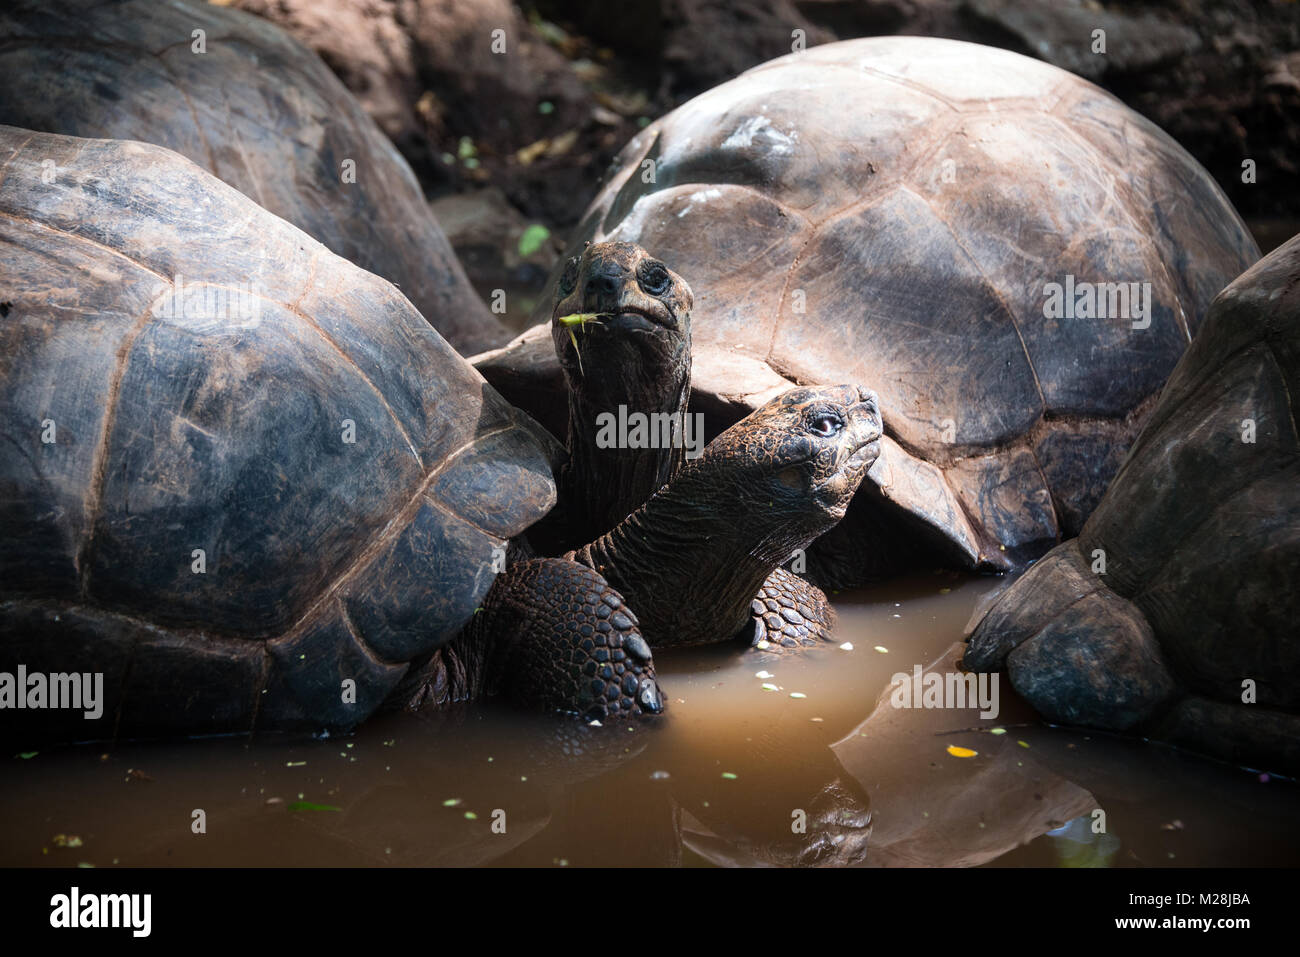 Les tortues géantes d'Aldabra au sanctuaire des Tortues, sur l'île de Prison réservation, Zanzibar Banque D'Images